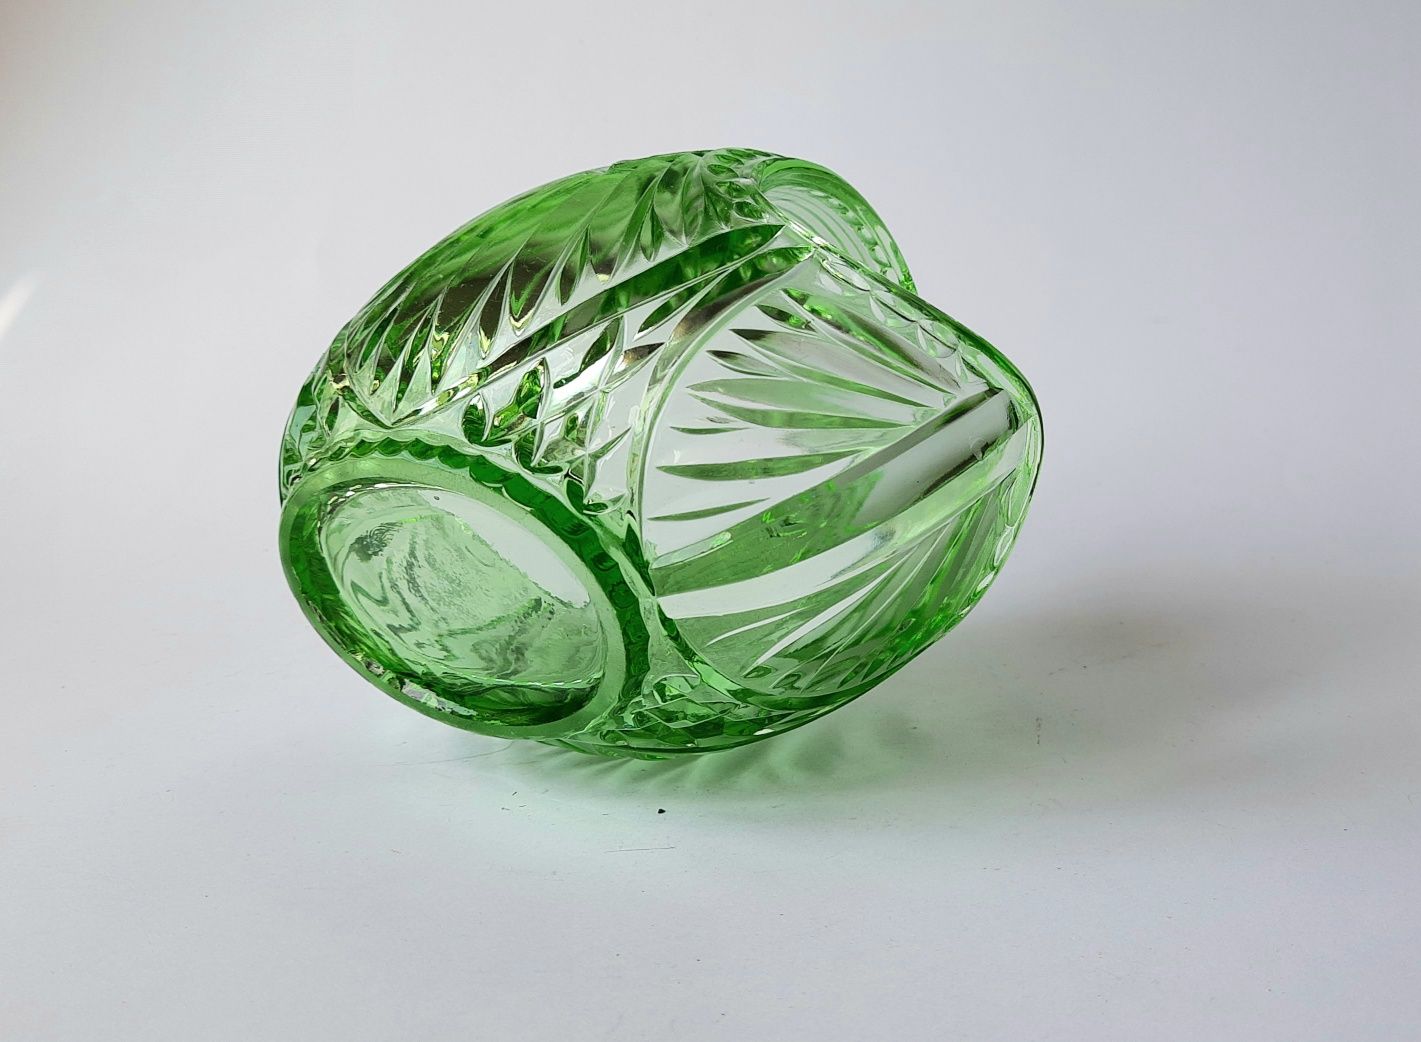 Zabytkowy koszyczek - jajko  - zielone szkło prasowane  - 1954 rok